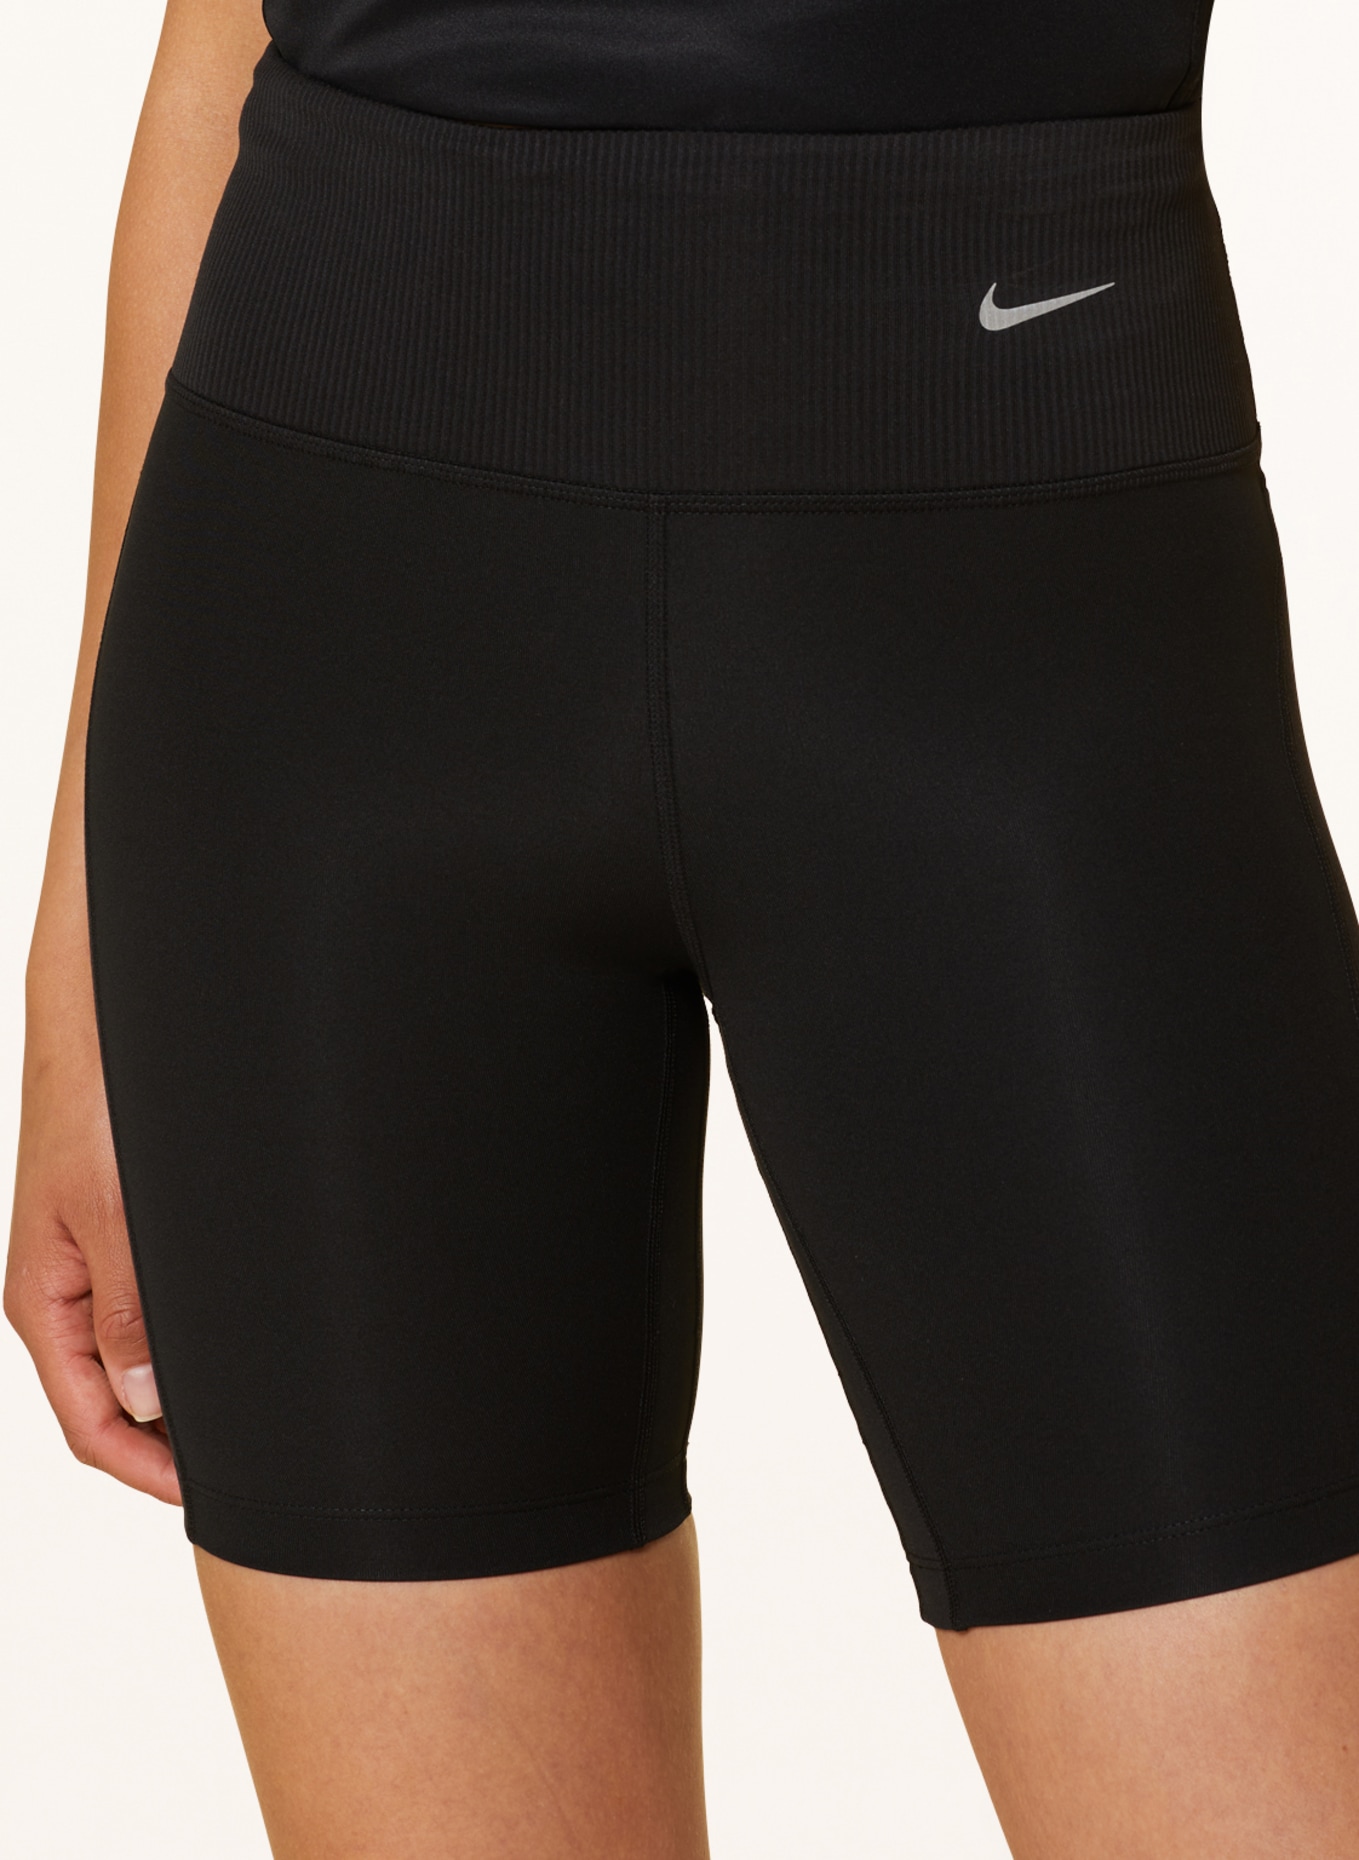 Nike Running tights DRI-FIT in black